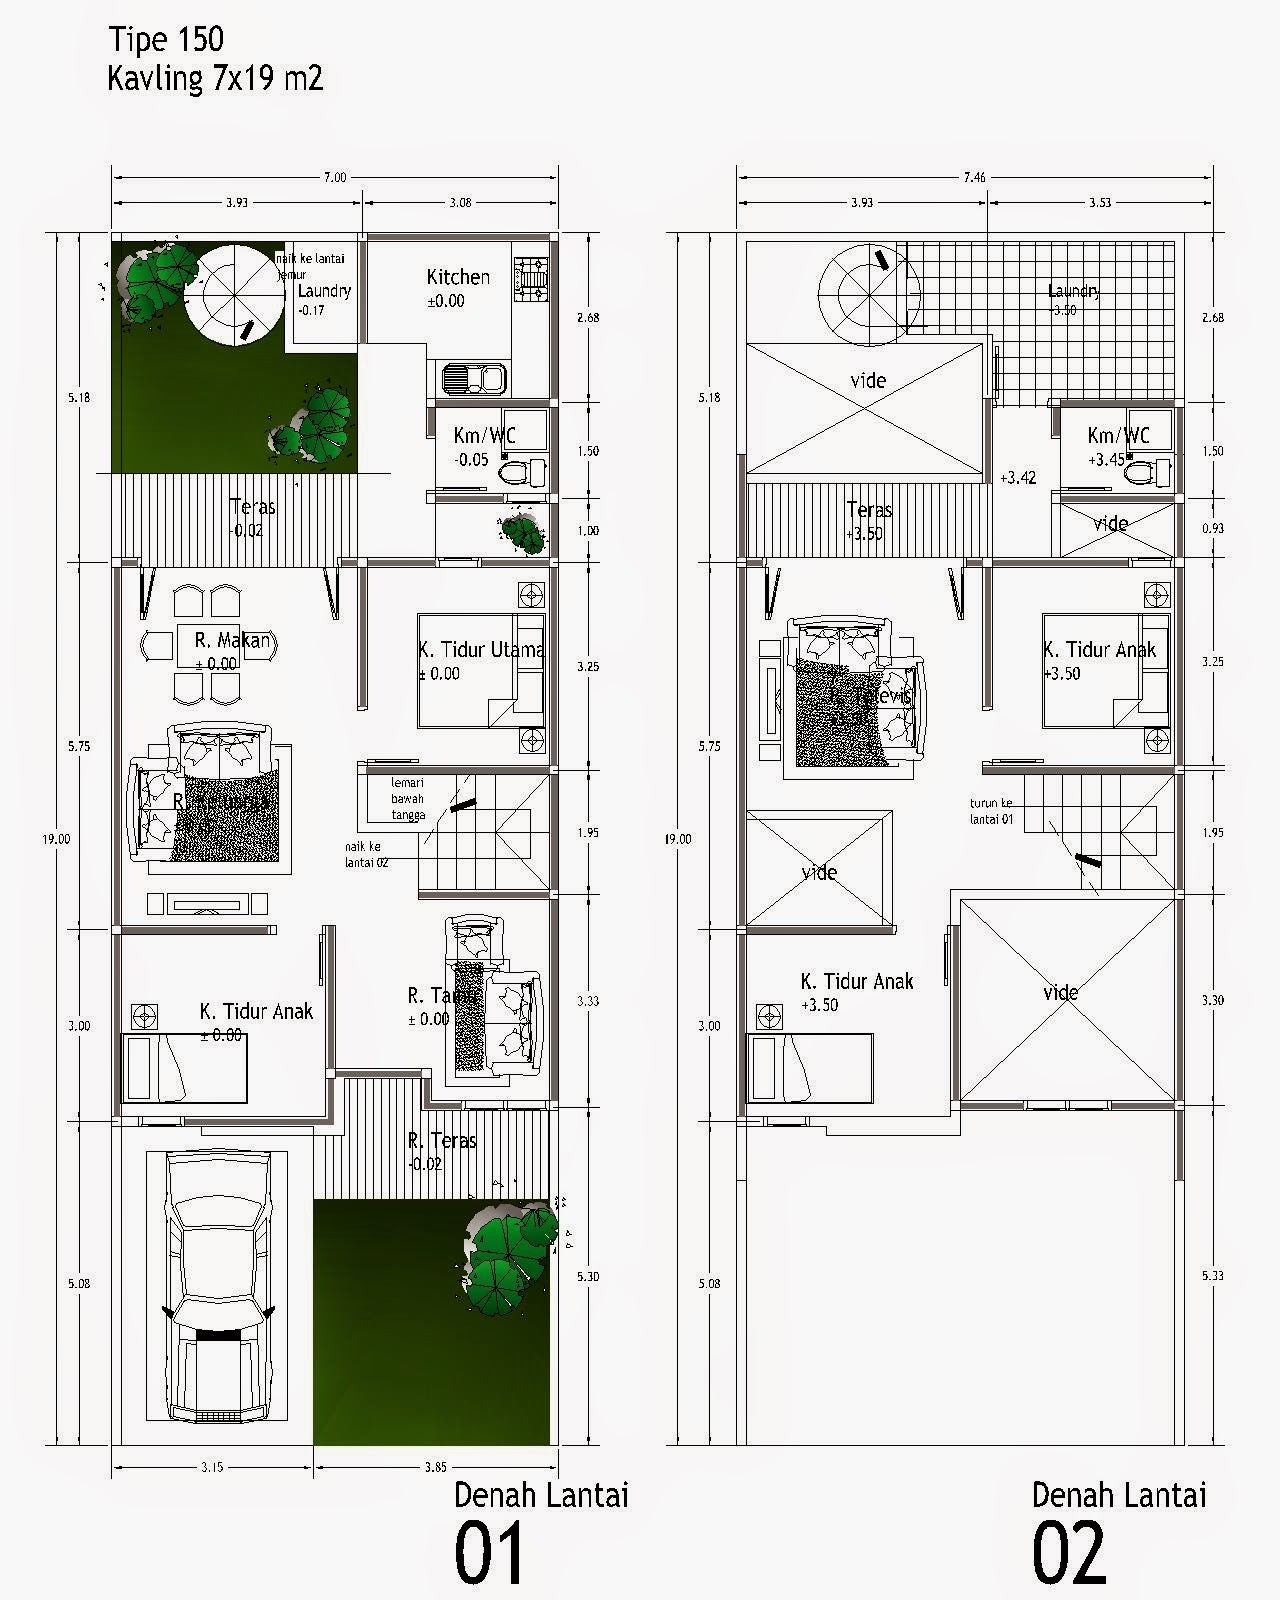 32 Desain Rumah Minimalis 2 Lantai Ukuran 8x9 Paling Modern Dan